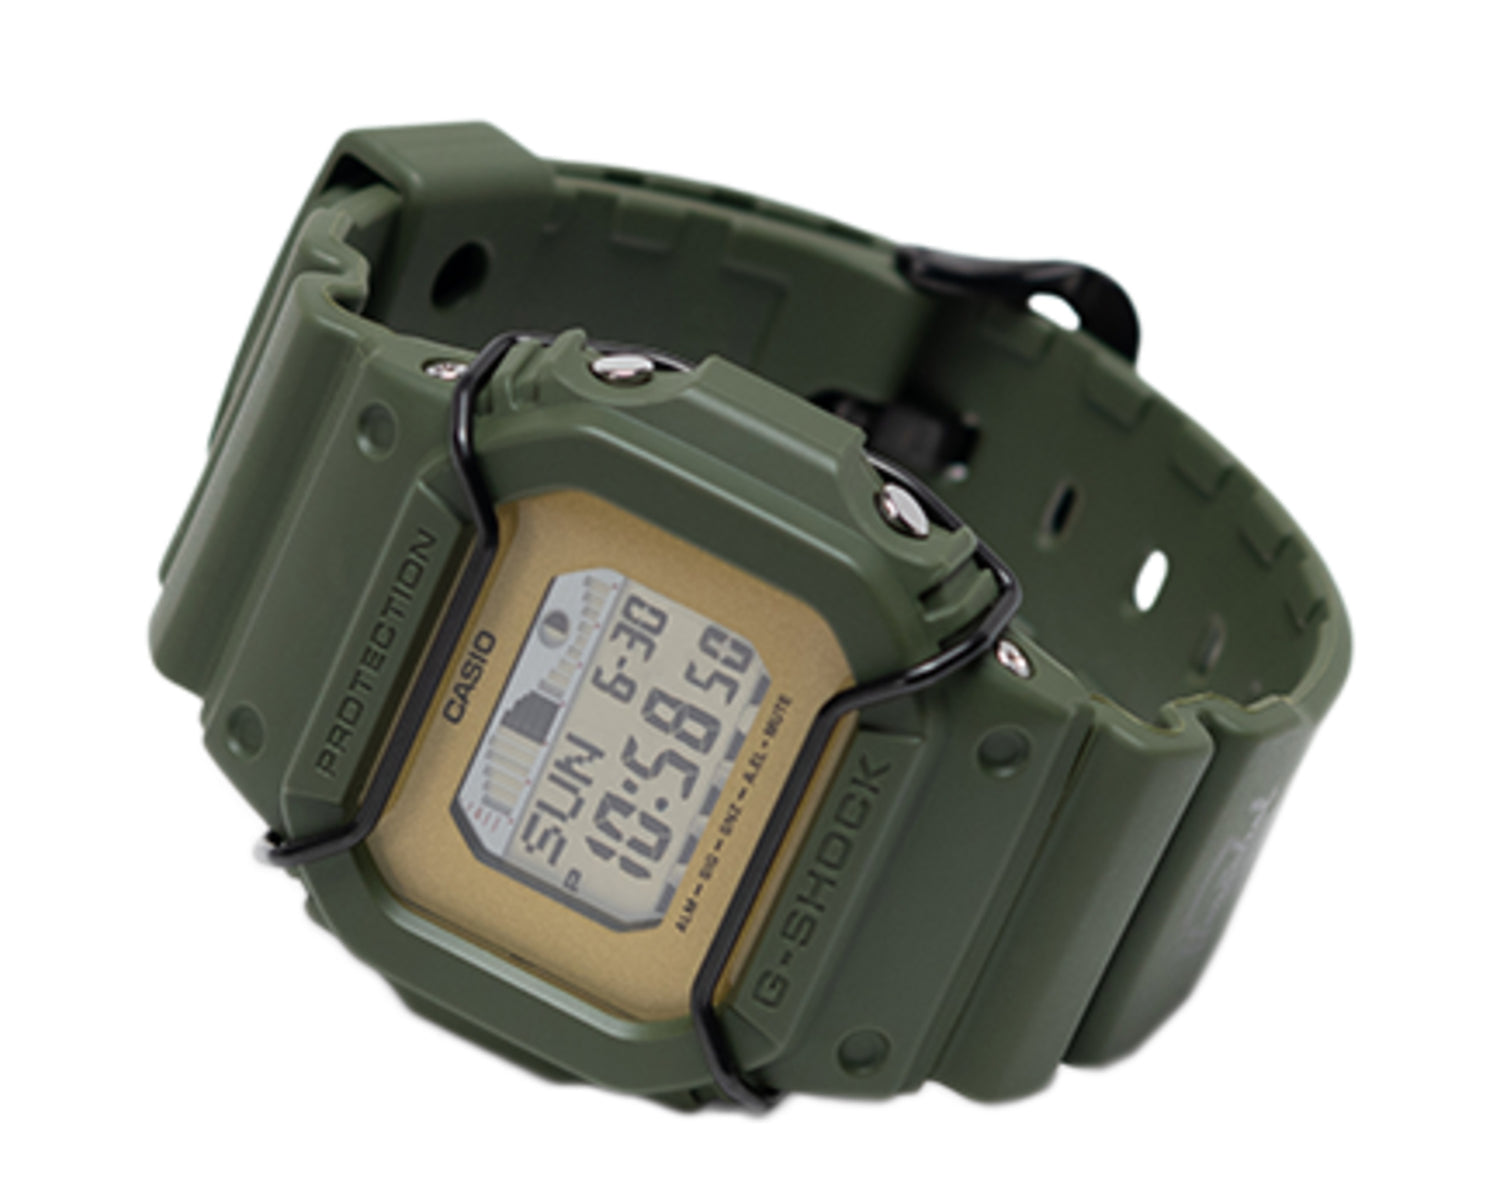 Casio G-Shock GLX5600 Herschel Limited Edition Digital Men's Watch